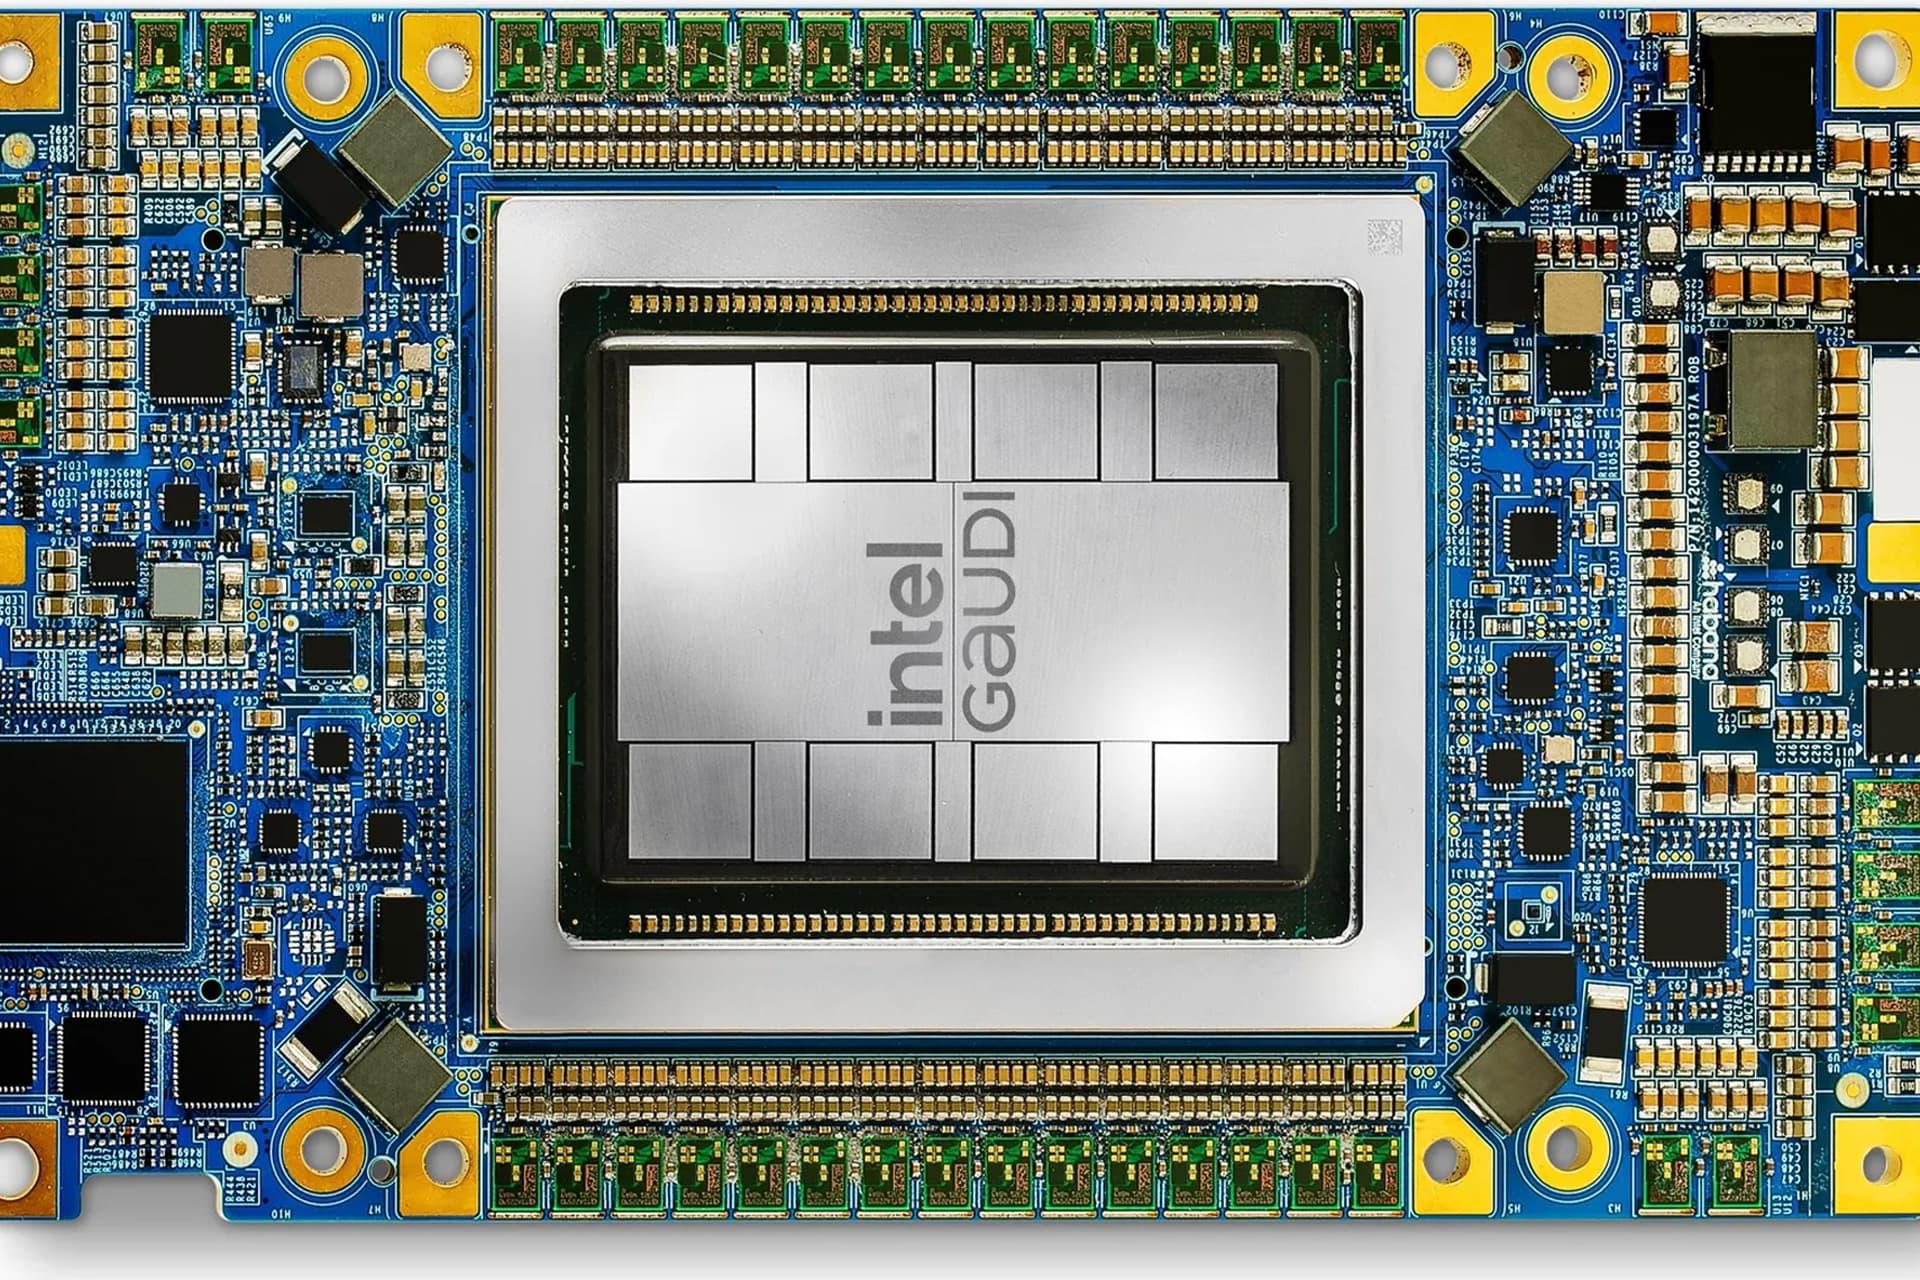 مرجع متخصصين ايران پردازنده اينتل Intel Gaudi 3 از نماي بالا